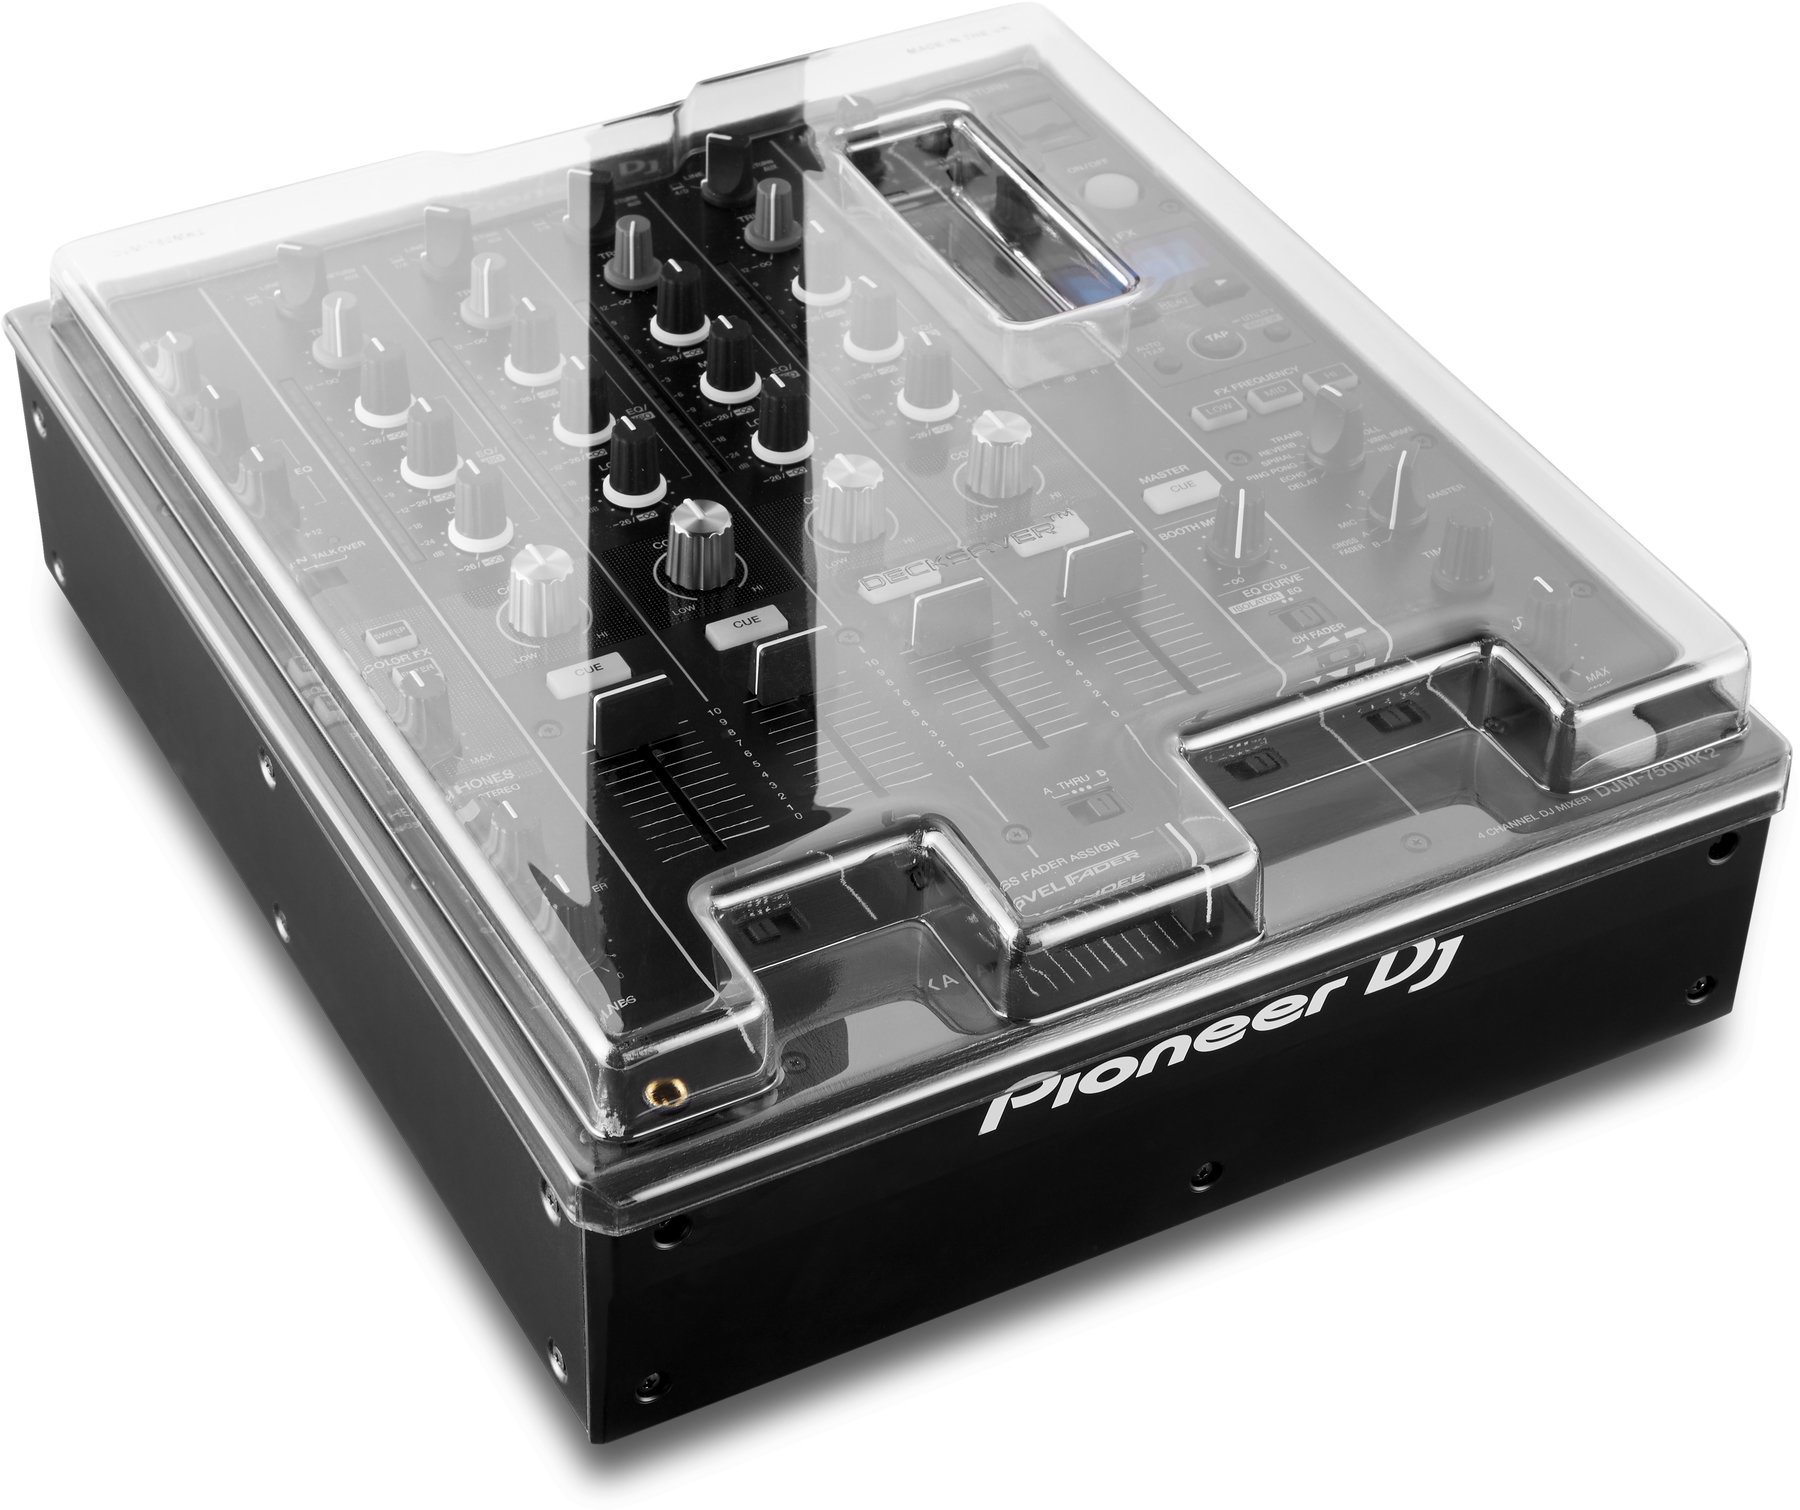 Ochranný kryt pro DJ mixpulty Decksaver Pioneer DJM-750MK2